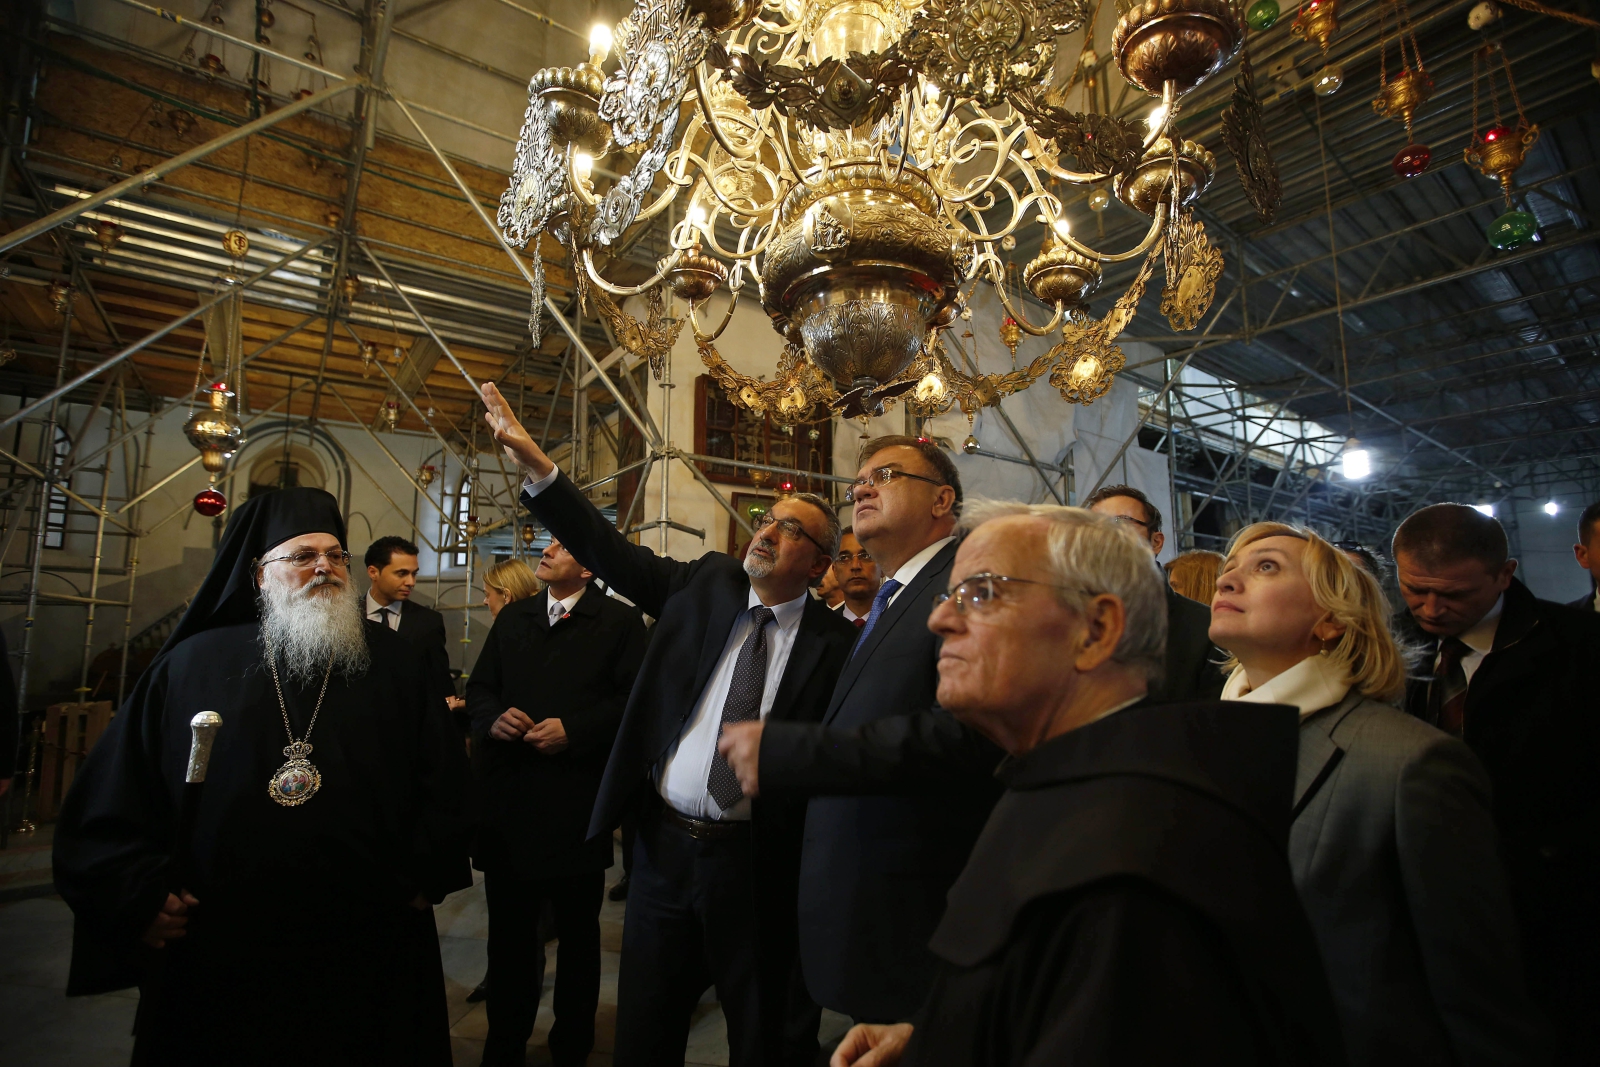 Przewodniczący Prezydium Bośni i Hercegowinyz wizytą w kościele Bożego Narodzenia w Betlejem na Zachodnim Brzegu.